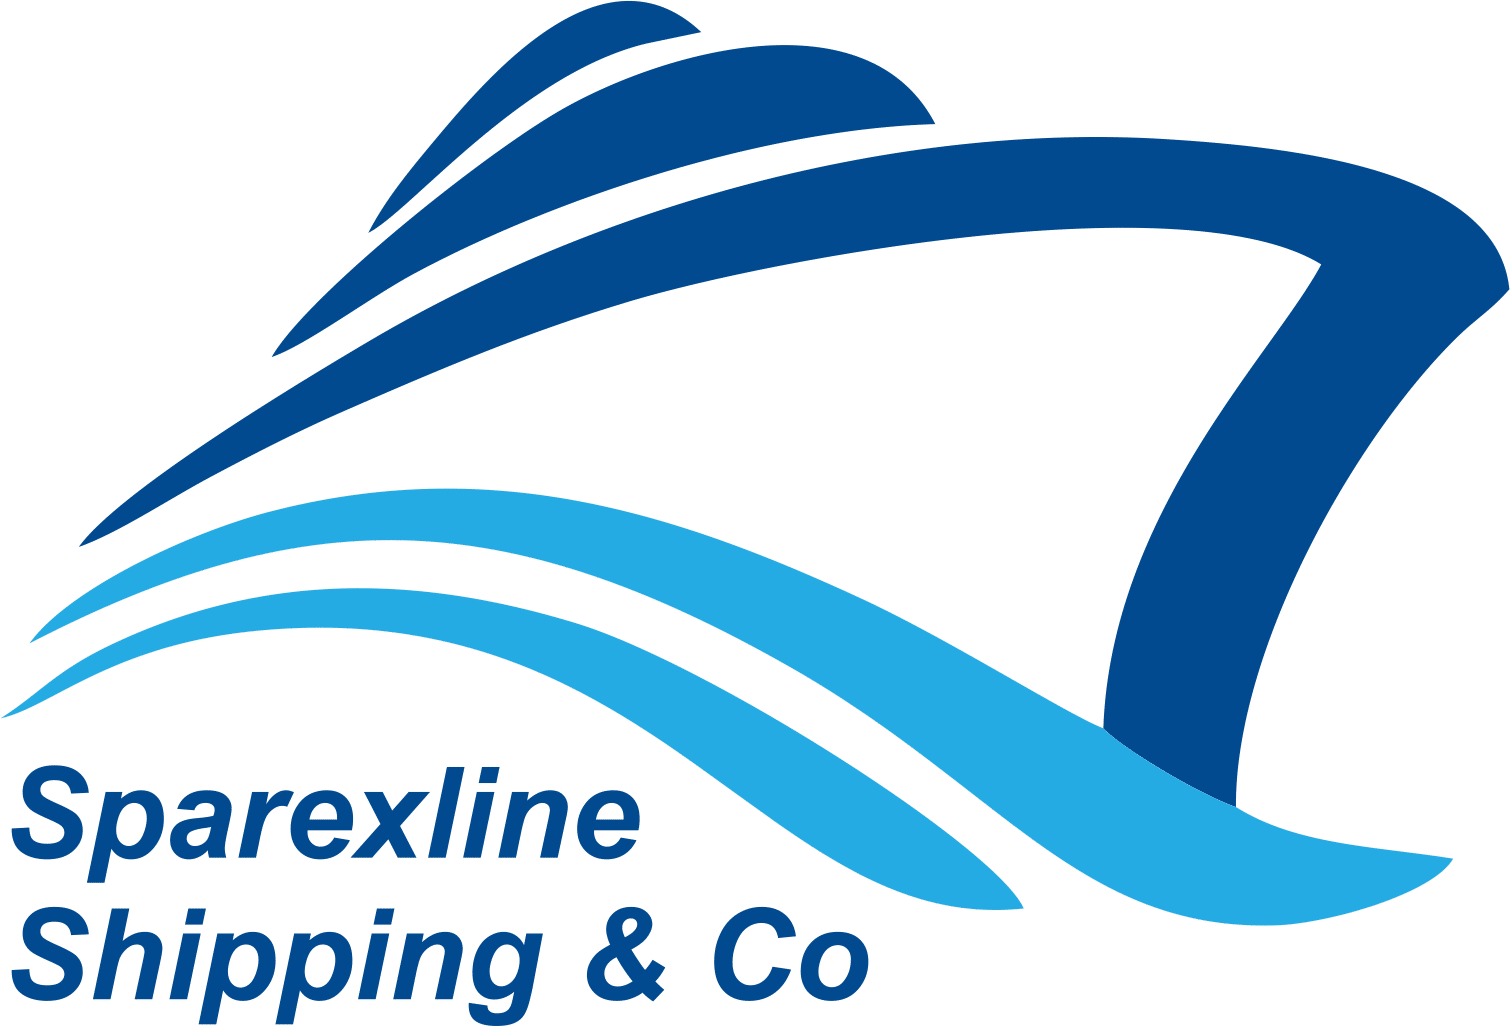 Sparexline Shipping & Co